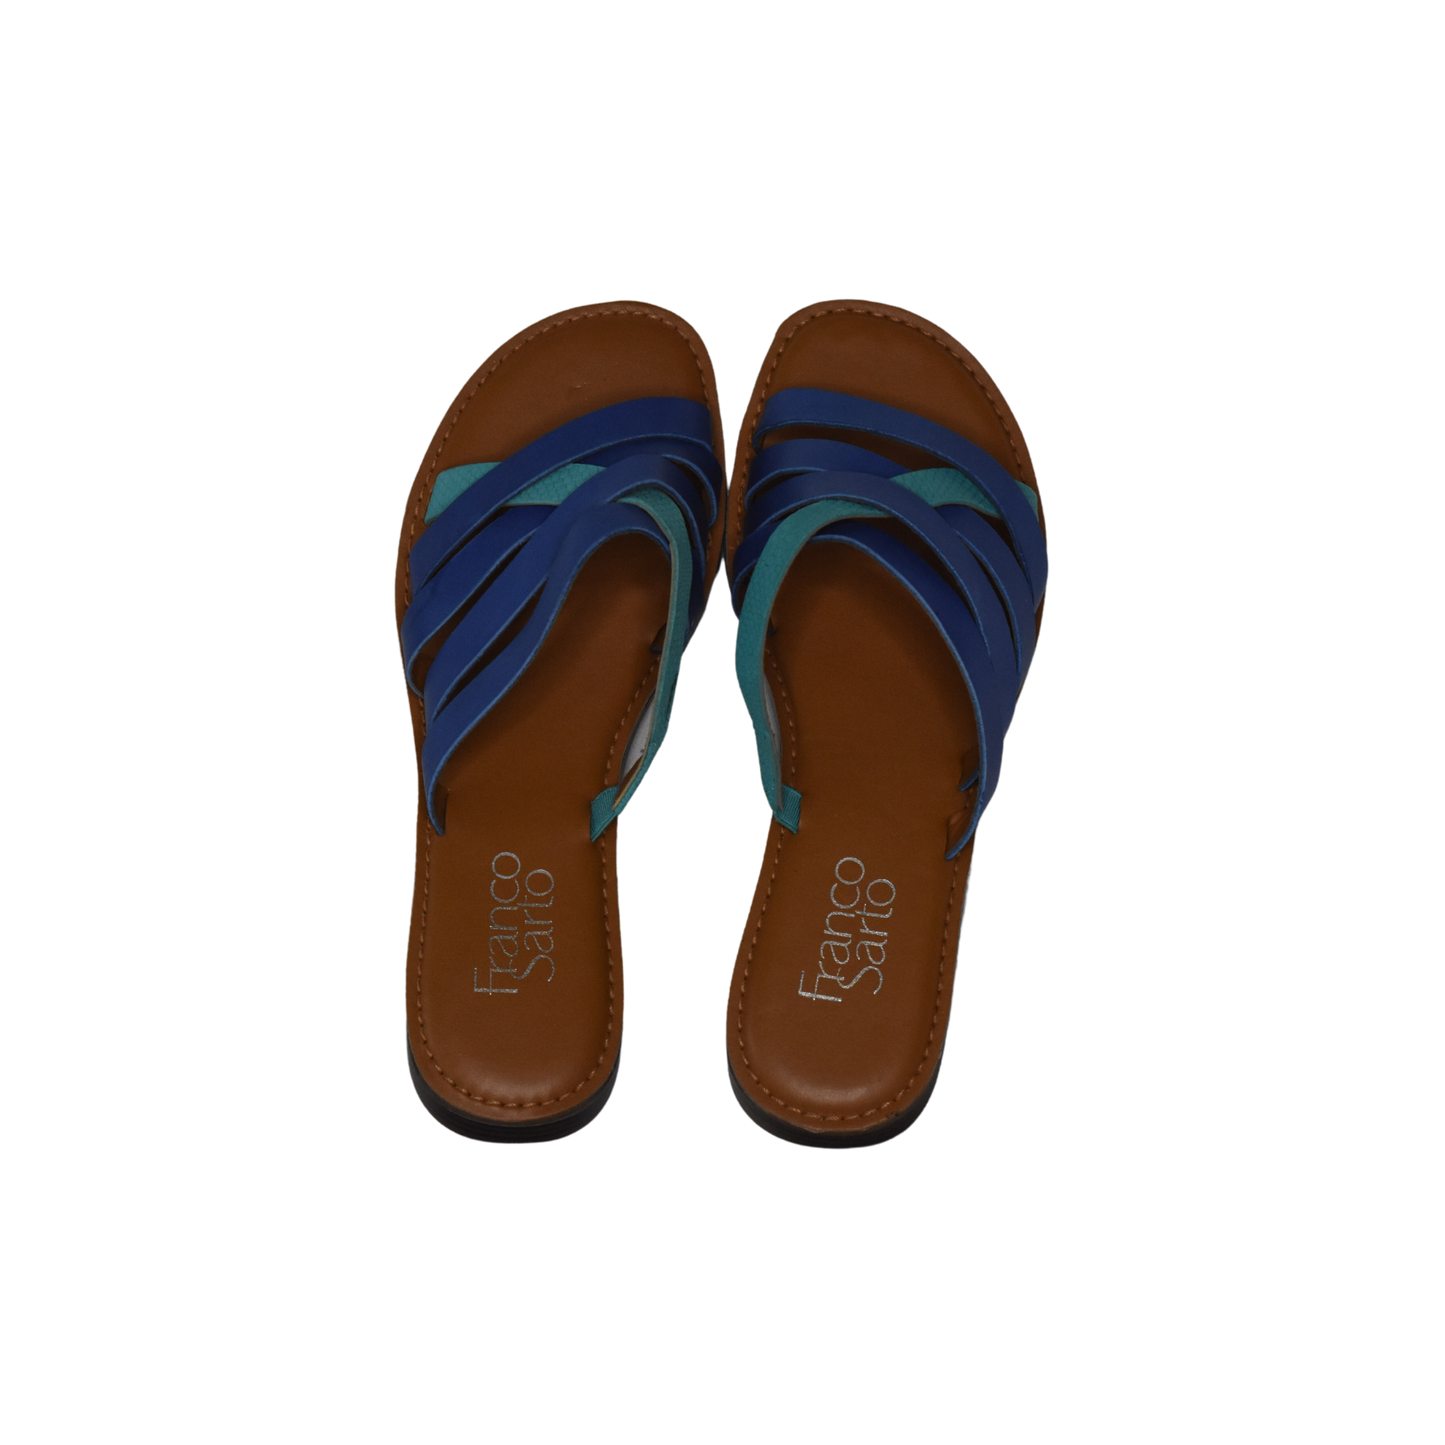 Franco Sarto Sandals Blue, Teal, Brown Size 6.5M SKU 000277-6